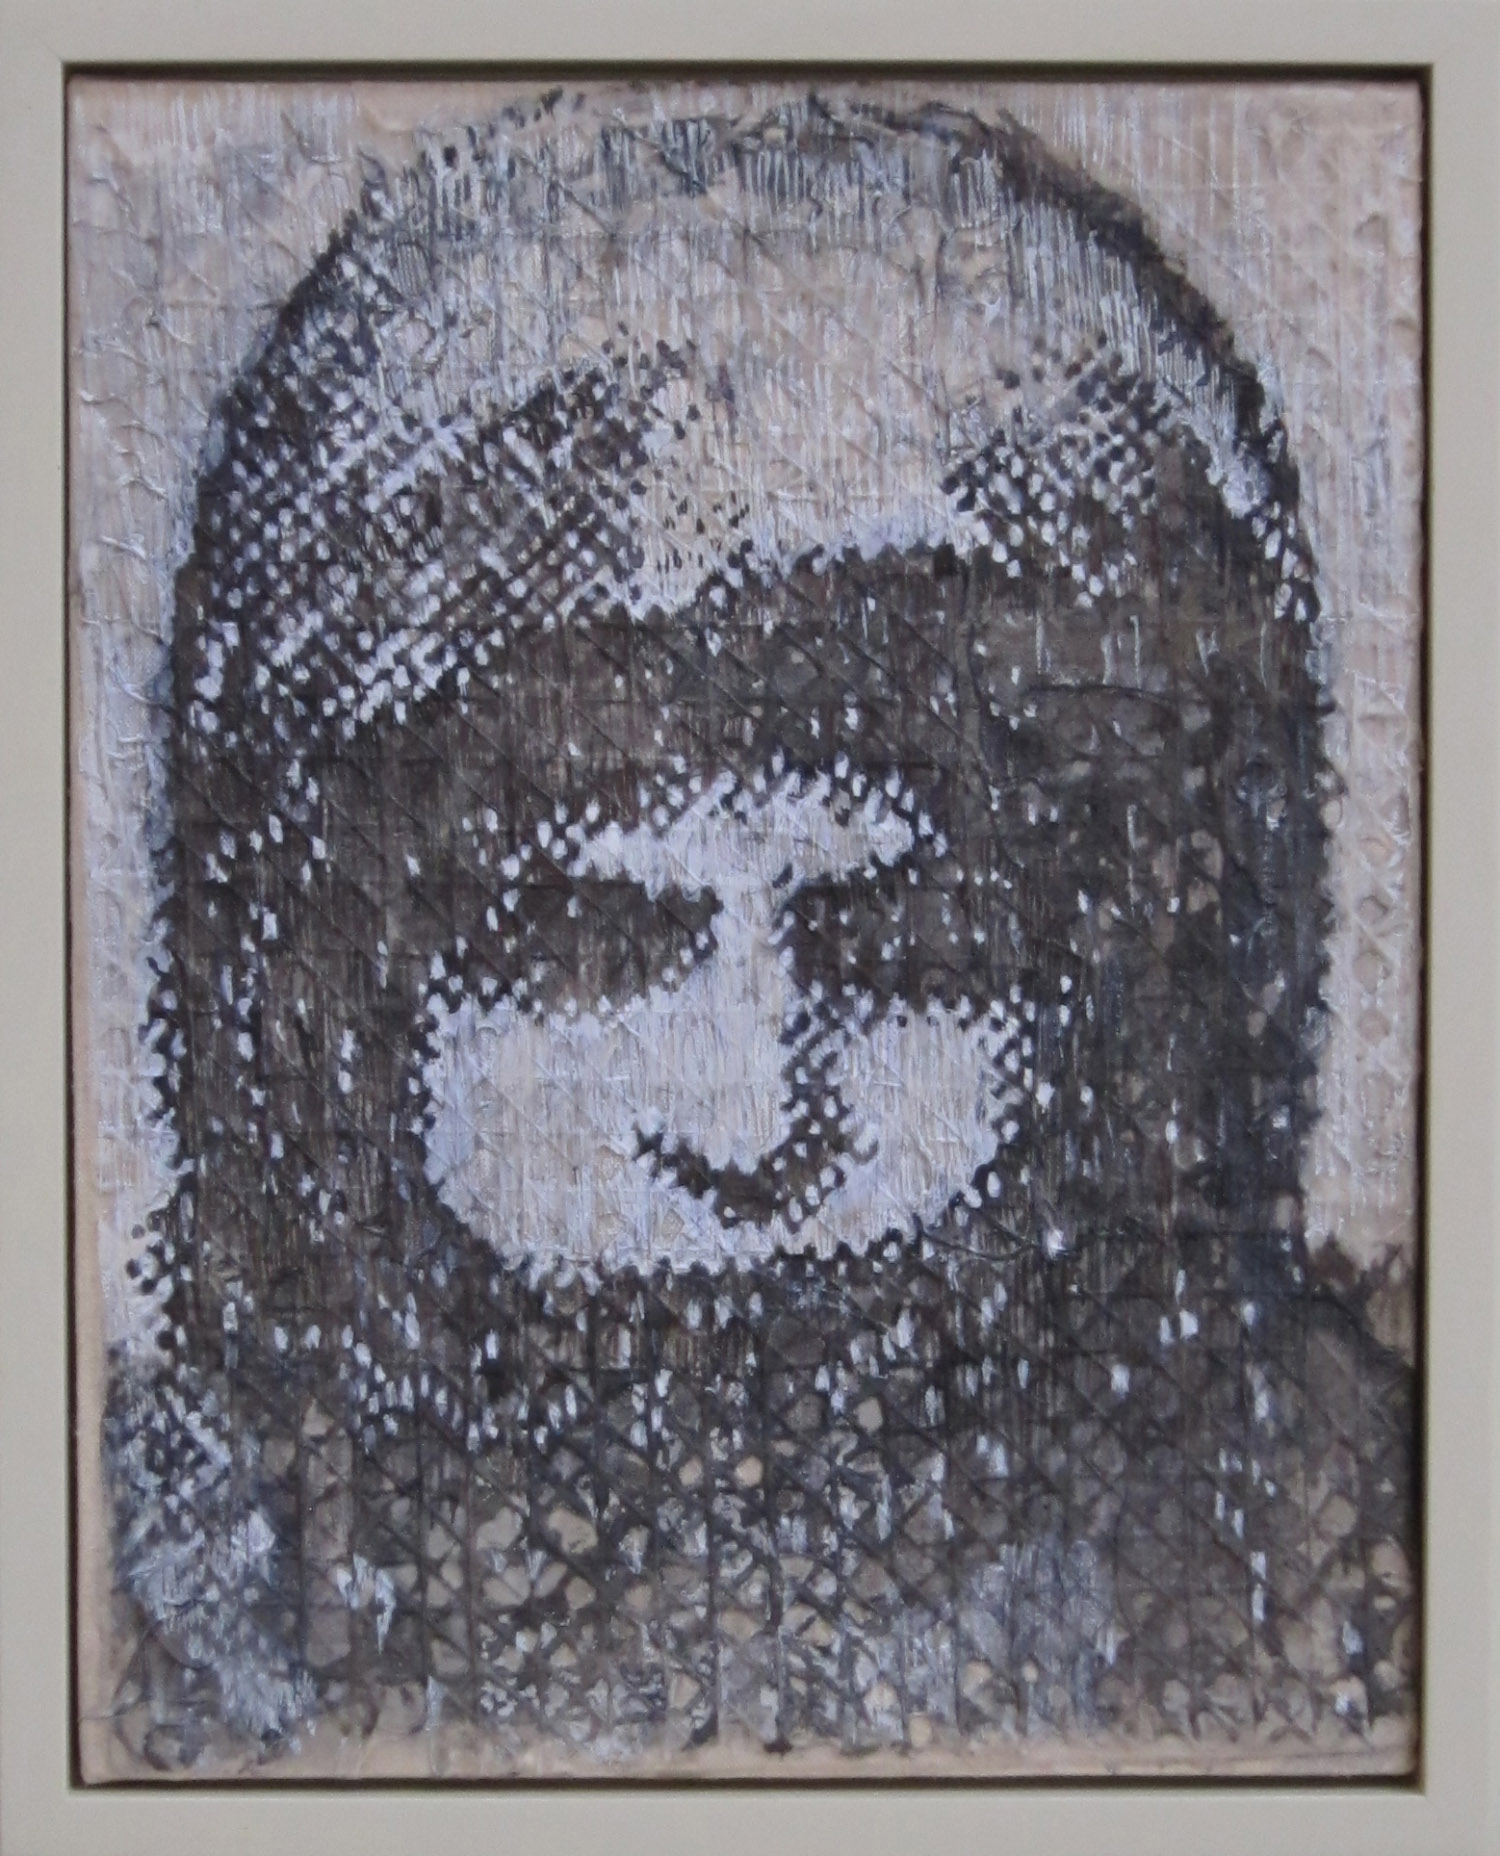 5bk(0) - Orphan Girl, inks on handmade paper over canvas, 14x11 in. 2010.jpg